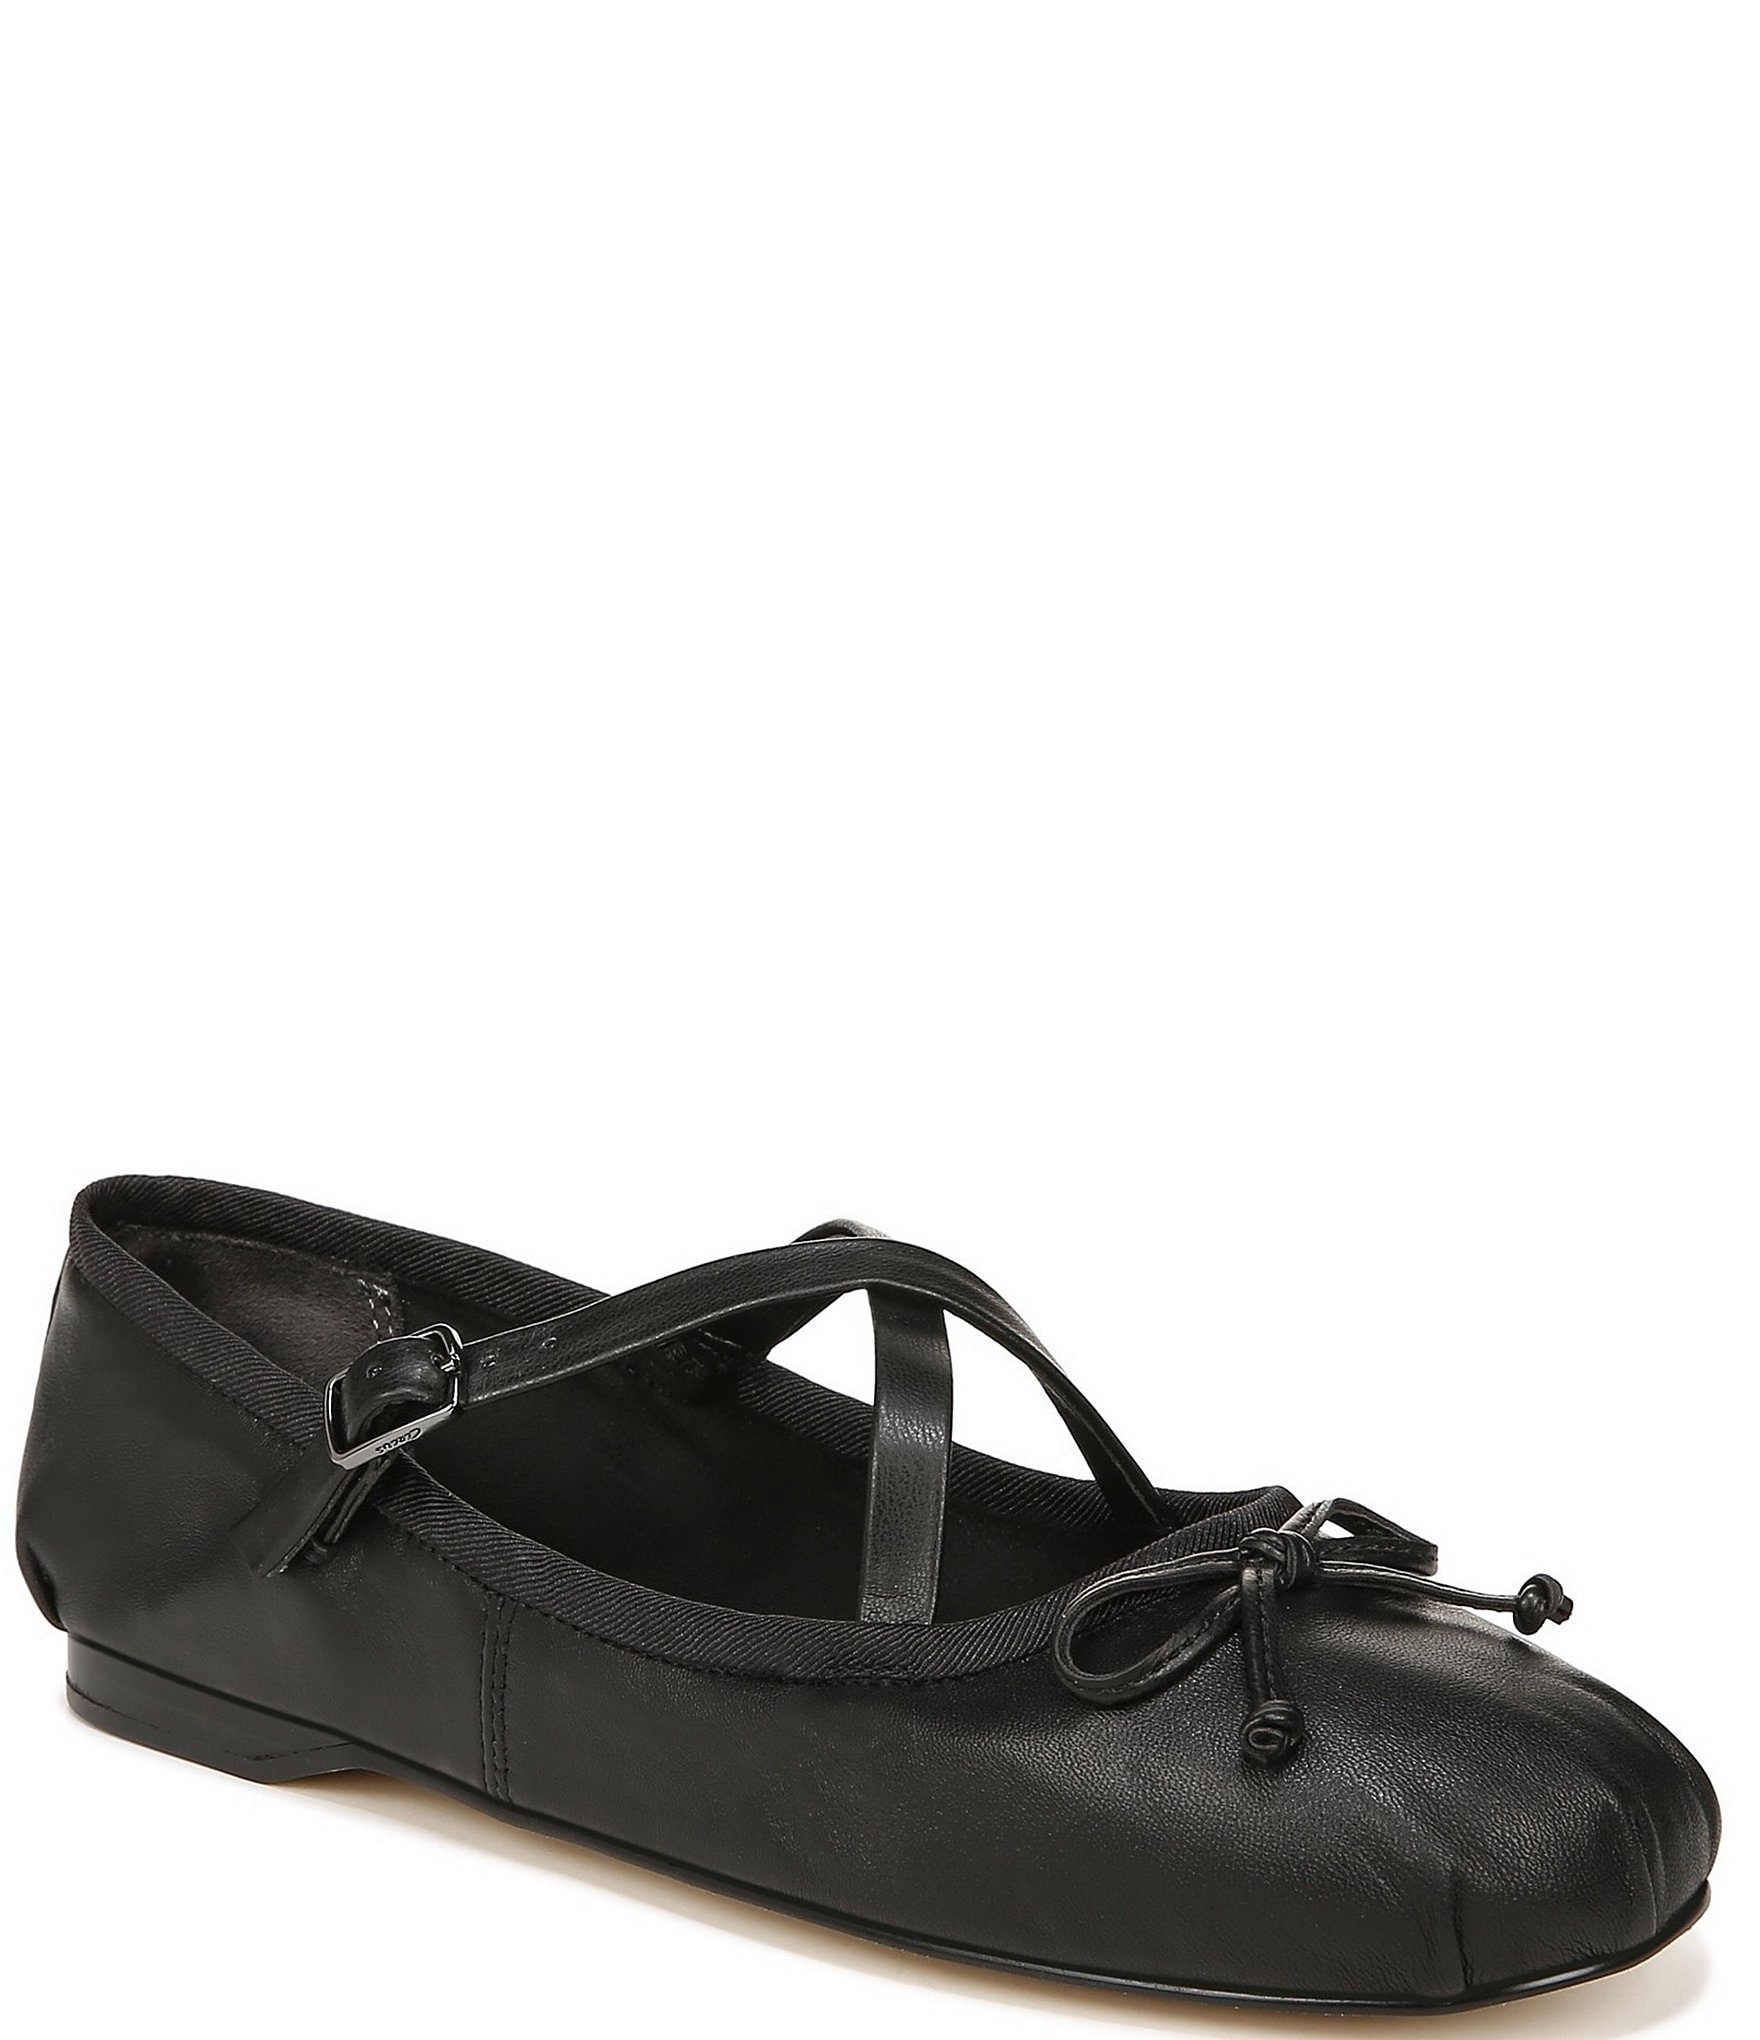 Rosalind Black Leather Ballet Flats